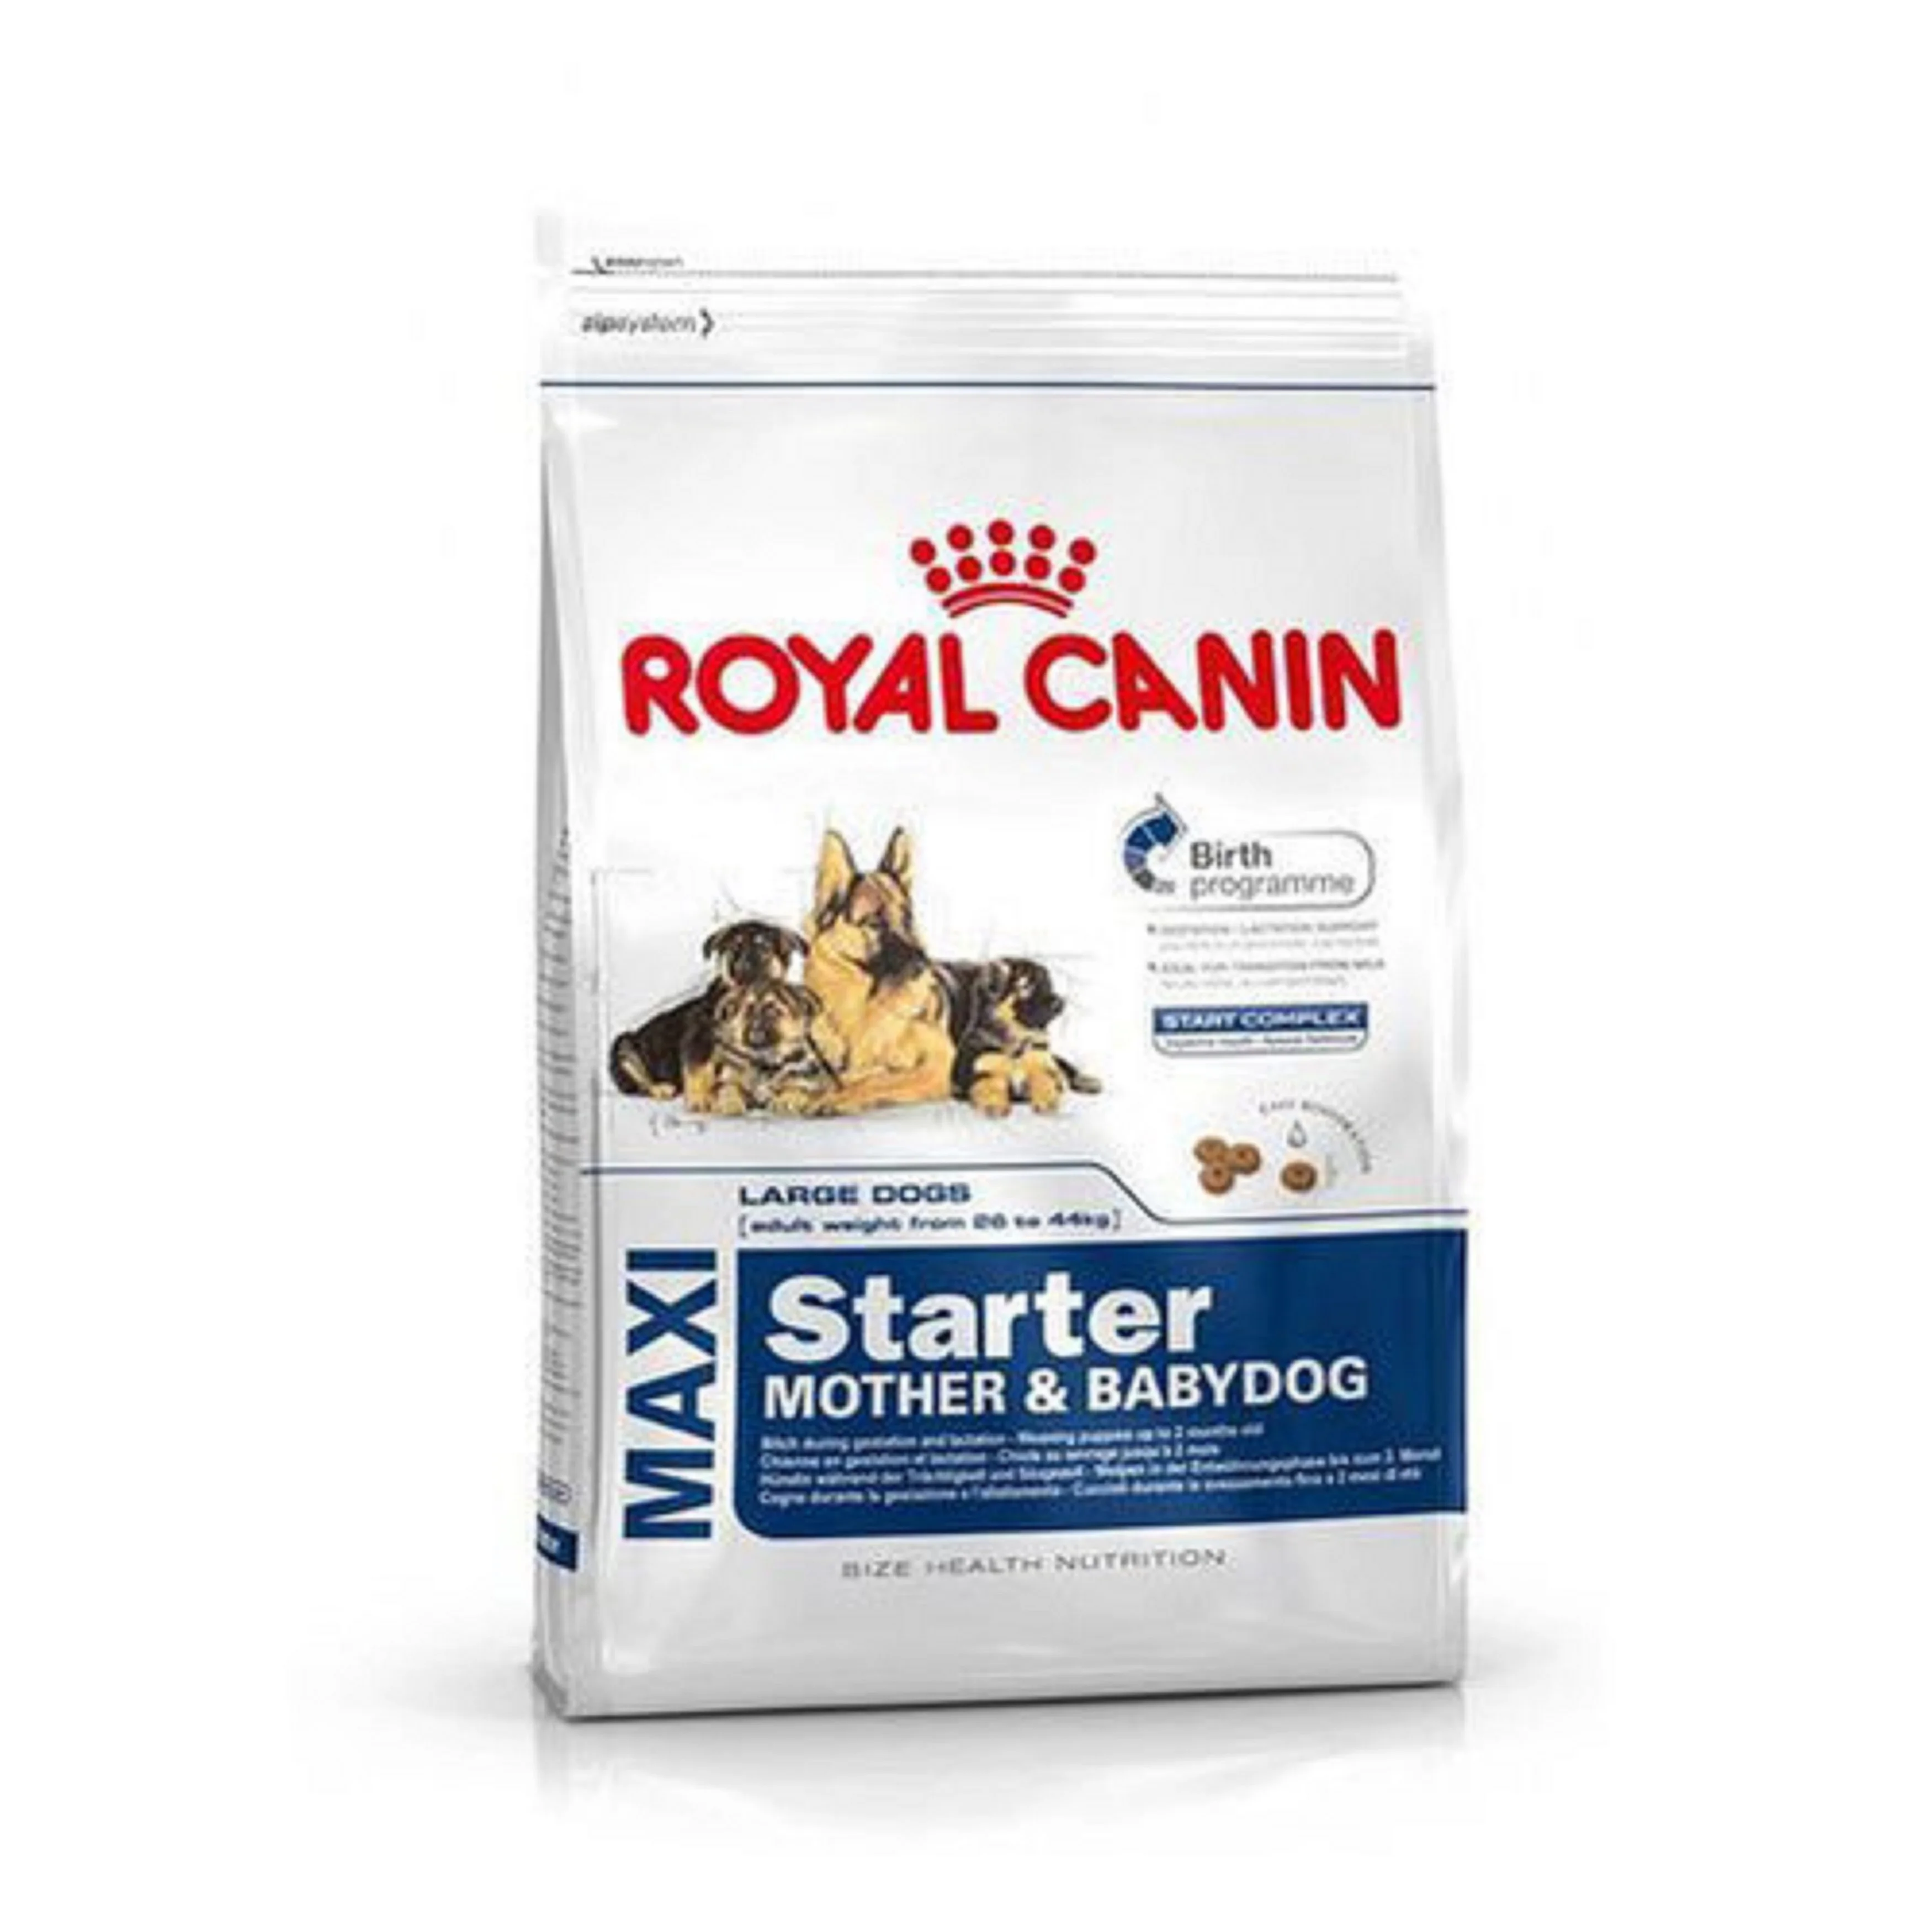 Royal Canin персидский 30 сухой корм для кошек/Royal Canin мини взрослых Электрический сухой собачьей еды (1700001068547)